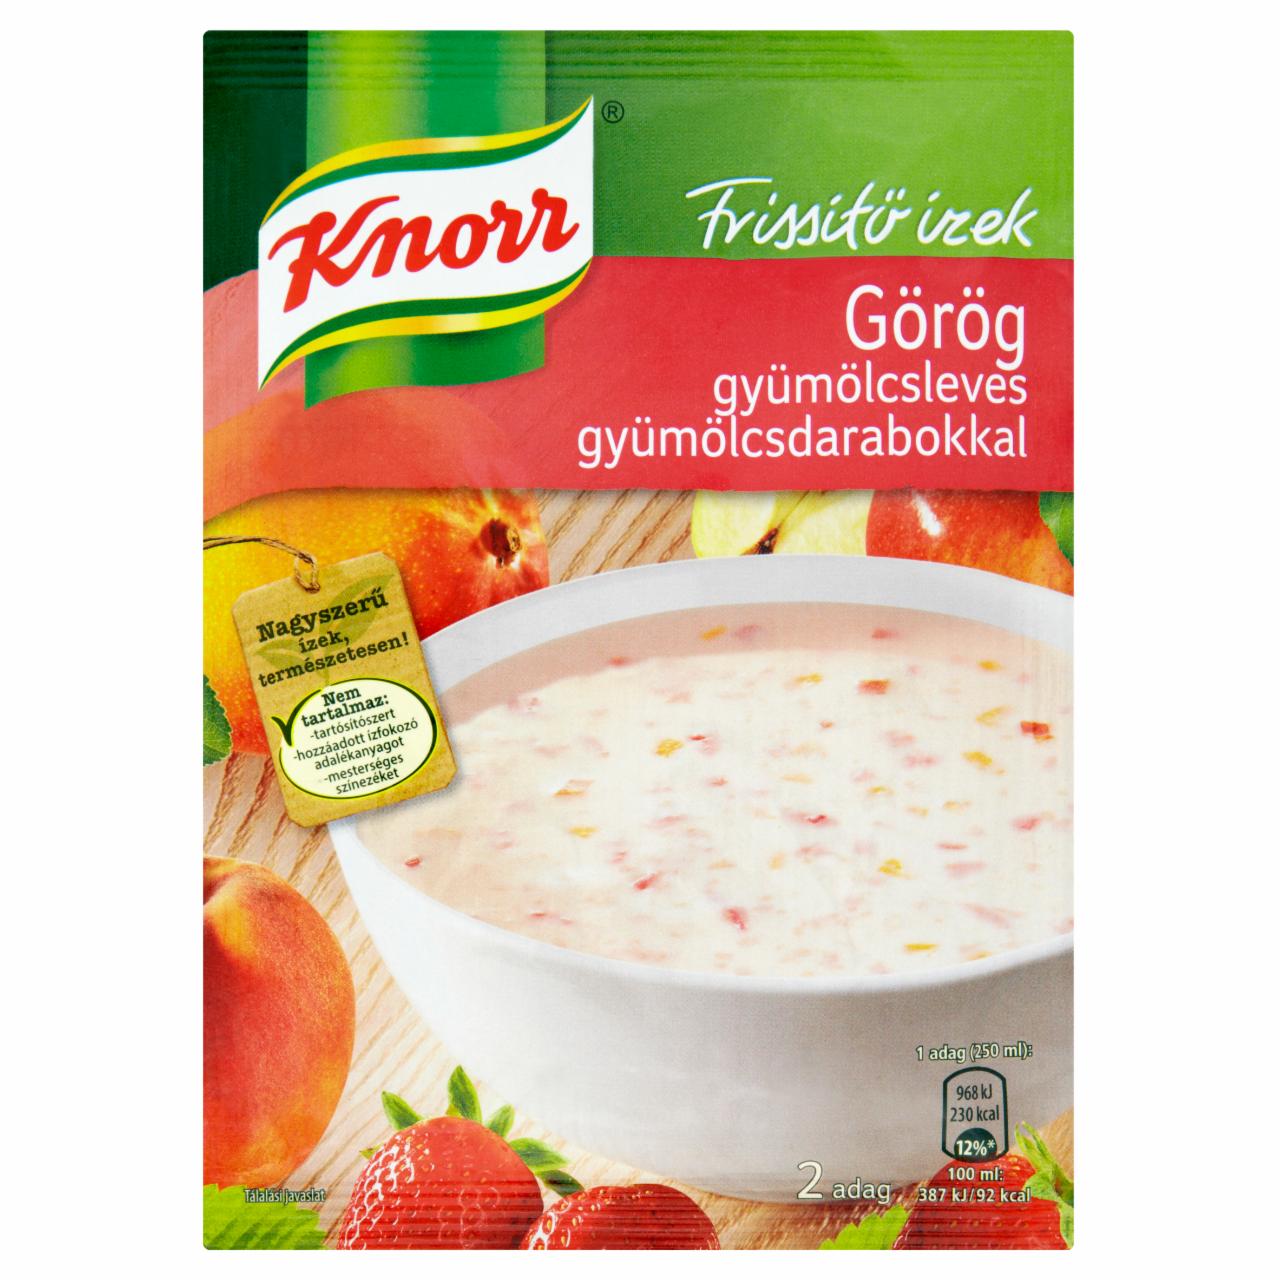 Képek - Knorr görög gyümölcsleves gyümölcsdarabokkal 54 g